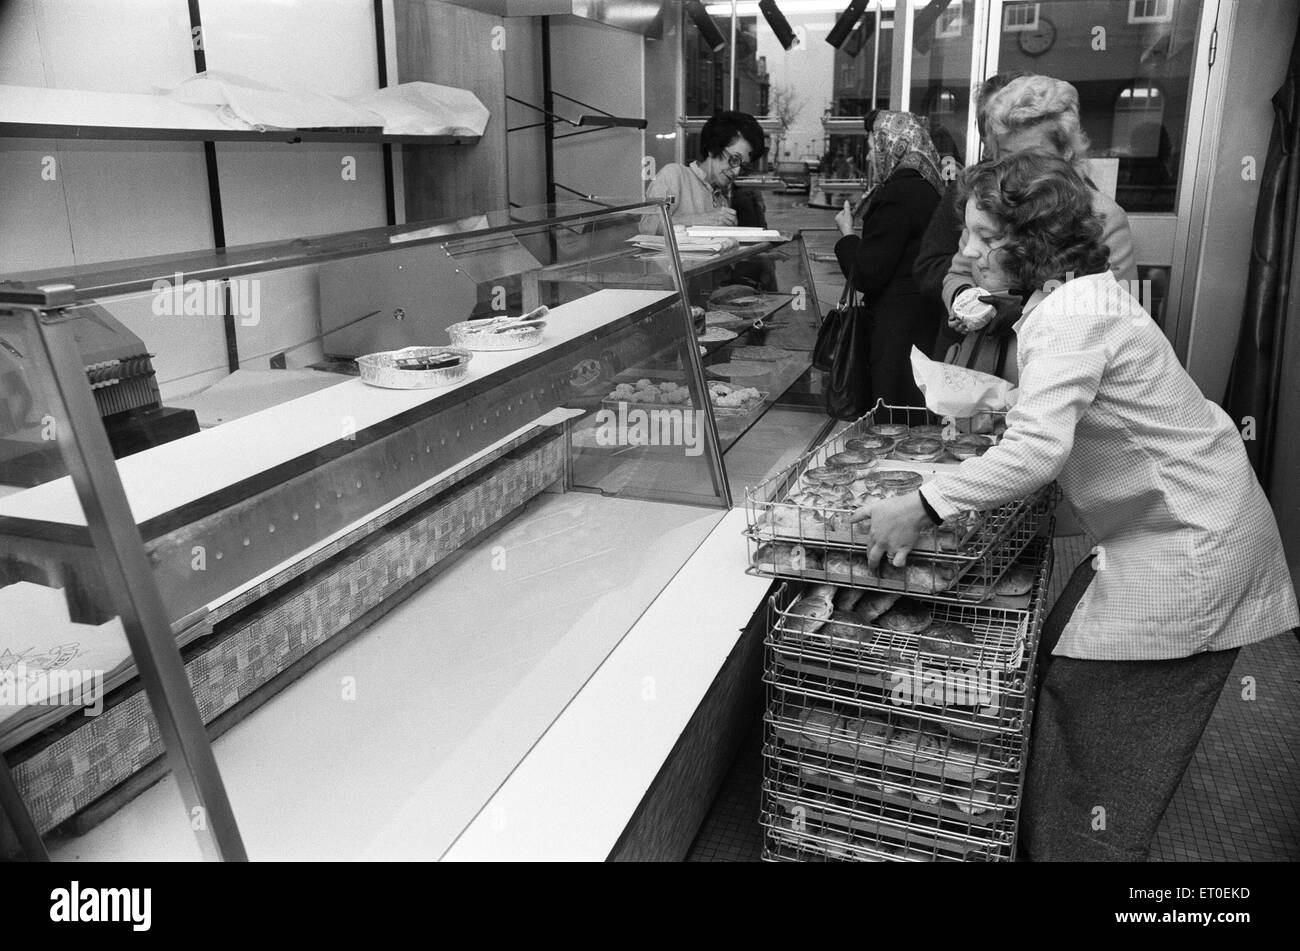 DIE siebziger Jahre waren eine Zeit des Streiks, und im Dezember 1974, die großen nationalen Bäcker beschlossen, nachziehen, fordern eine 66 % Lohnerhöhung. Mitarbeiter von größeren Firmen hatte leere Regale und Dutzende von Kunden abwenden. Kleine Bäckereien waren Arbeiten aus dem Ruder aber nicht in der Lage, die Nachfrage als Geschäfte rief in für zusätzliche Lieferungen. Als Hausfrauen beschlossen, ihr eigenes Brot backen, stiegen die Verkaufszahlen der Hefe. (Bild) Leere Regale in der Bäckerei. 3. Dezember 1974 Stockfoto